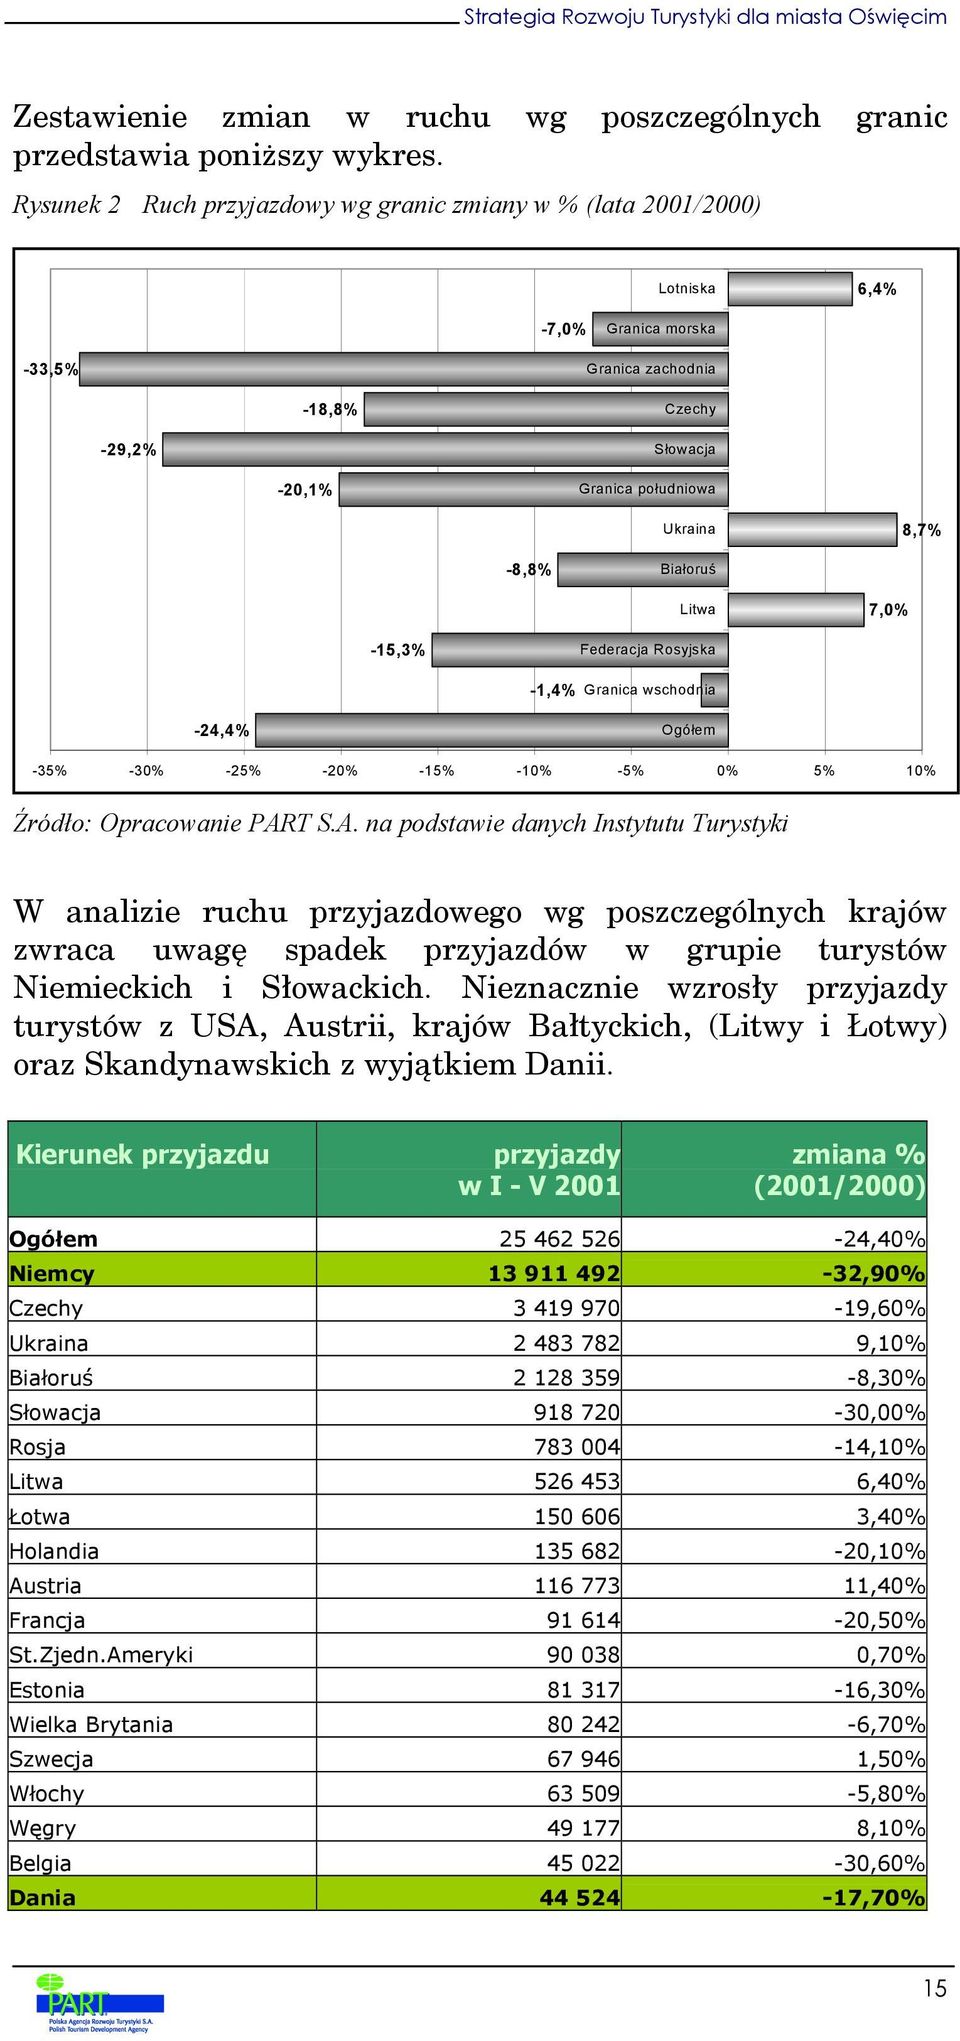 Białoruś Litwa 7,0% -15,3% Federacja Rosyjska -1,4% Granica wschodnia -24,4% Ogółem -35% -30% -25% -20% -15% -10% -5% 0% 5% 10% Źródło: Opracowanie PAR